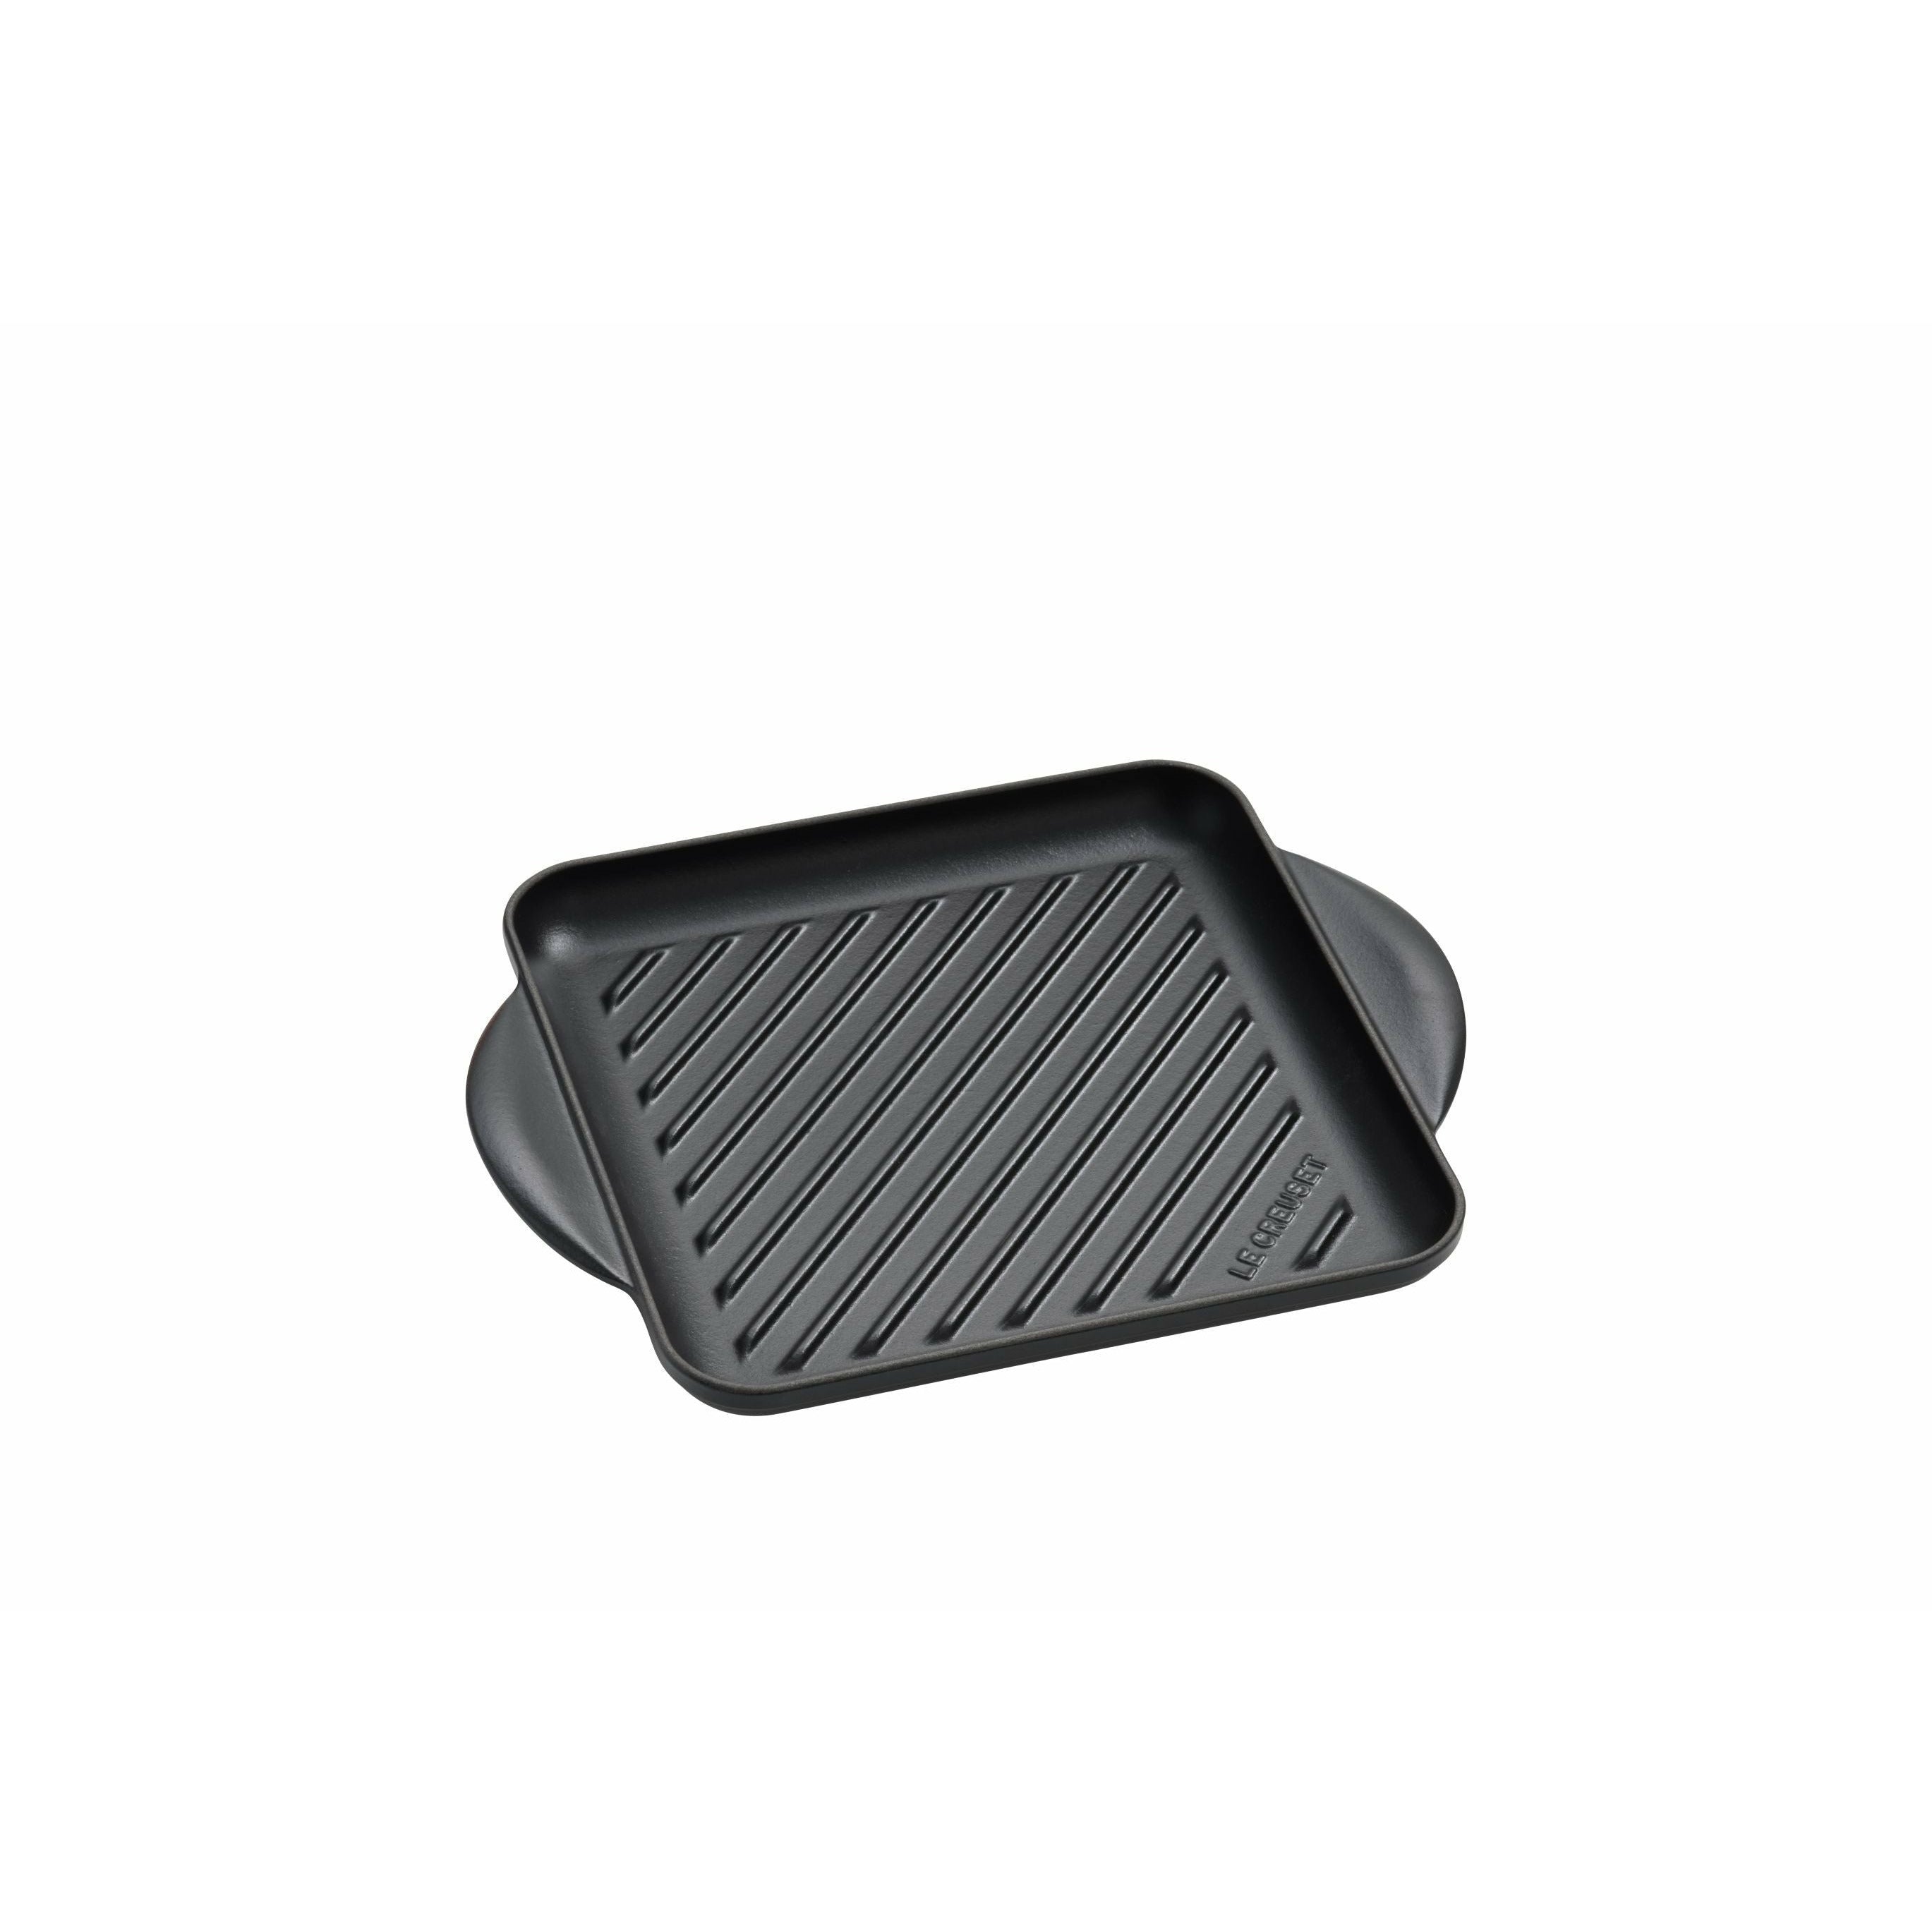 Le Creuset tradizione quadrata piastra grill 24 cm, nero